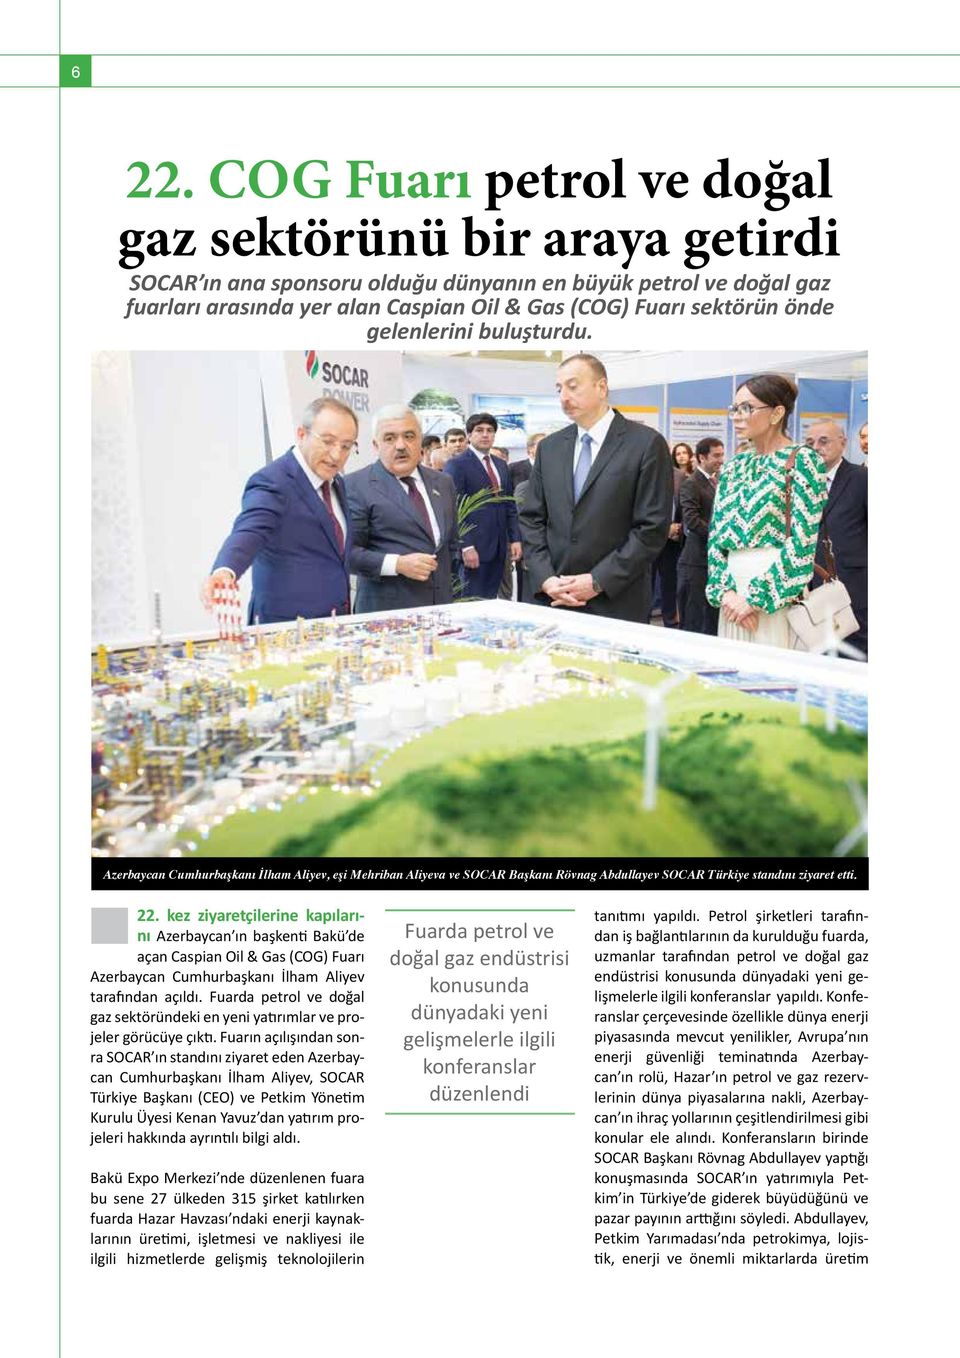 kez ziyaretçilerine kapılarını Azerbaycan ın başkenti Bakü de açan Caspian Oil & Gas (COG) Fuarı Azerbaycan Cumhurbaşkanı İlham Aliyev tarafından açıldı.